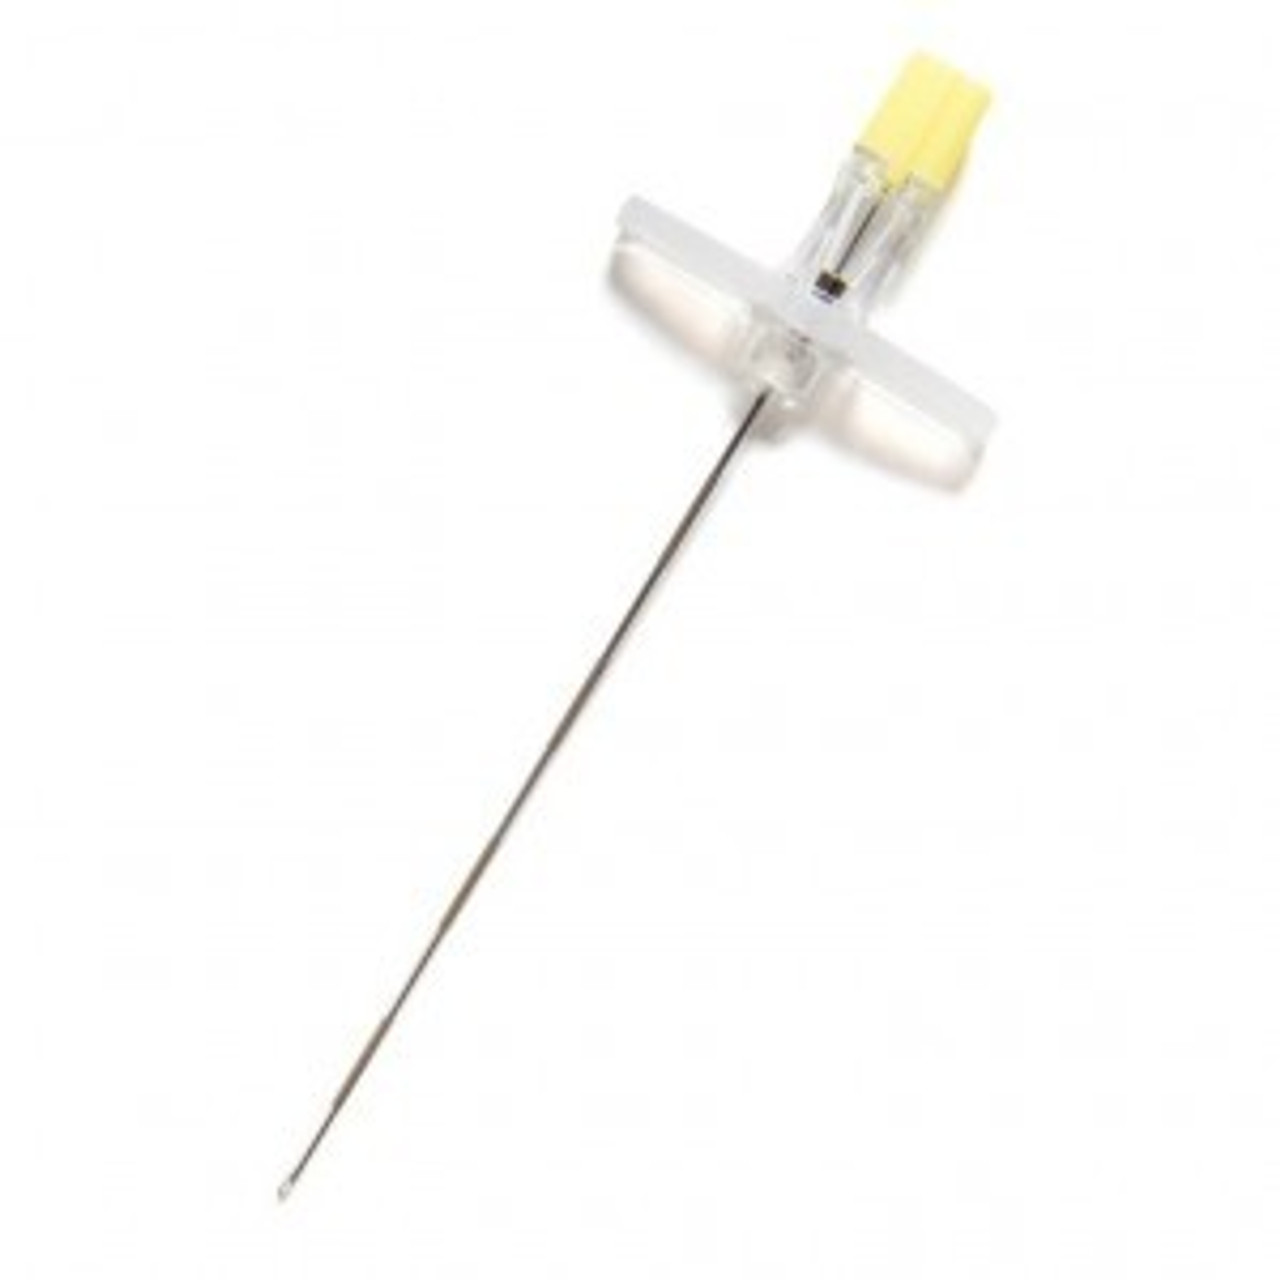 Avanos Tuohy Epidural Needle, 22G x 2", Plastic Hub, 25/bx